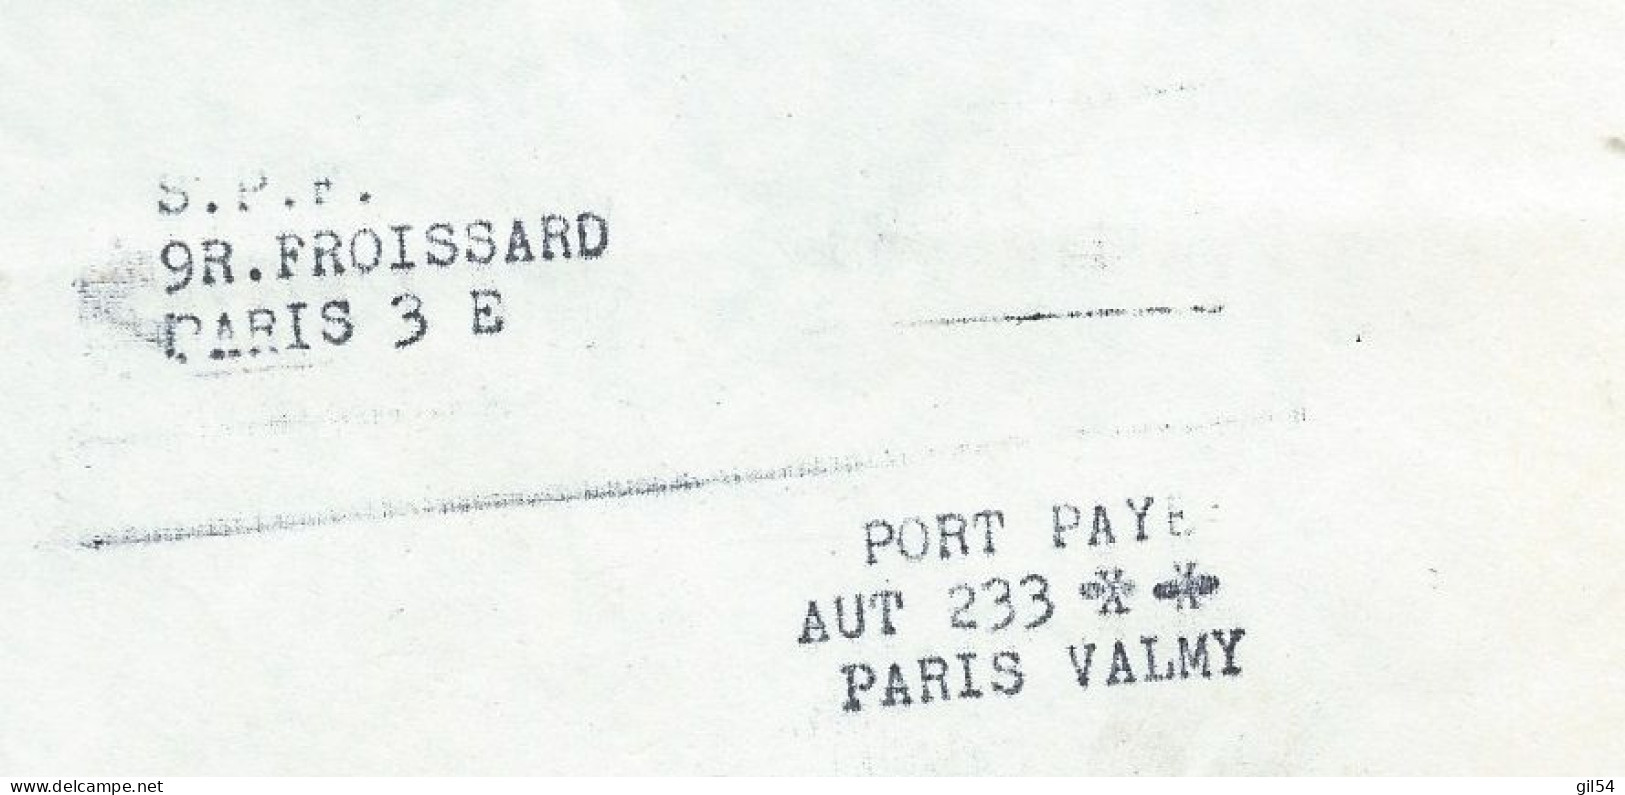 Lac En Port Paye Du Secours Populaire, Contenant Carnets Bon Du Soleil Pour Enfants Et Handicapes 19/05/1972  MALB13705 - Historical Documents